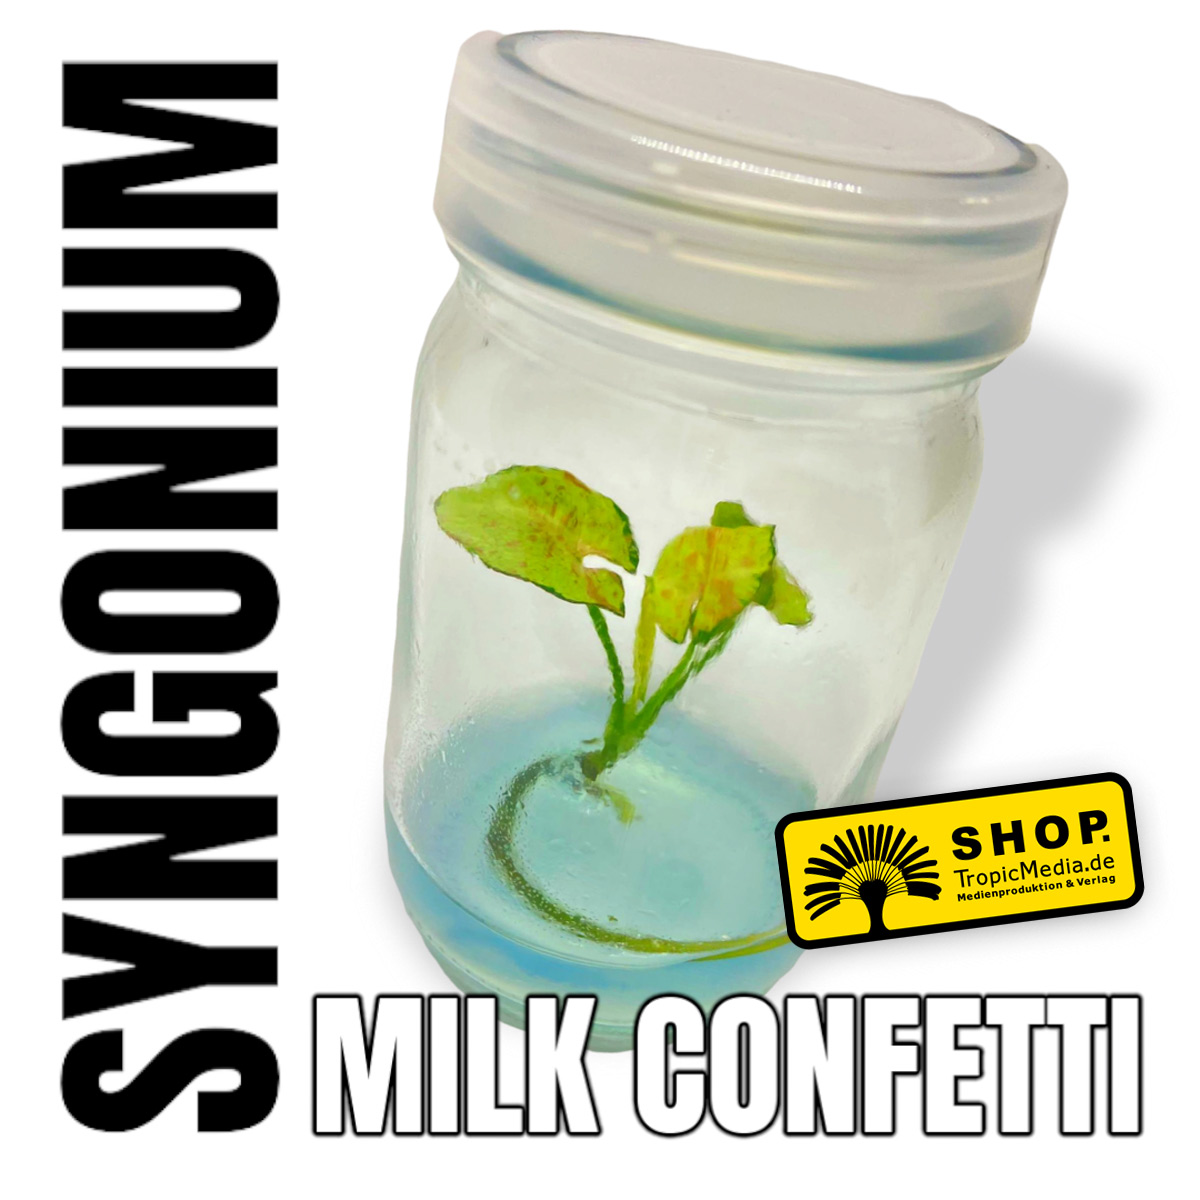 Syngonium  Milk Confetti Tissue Culture (TC)